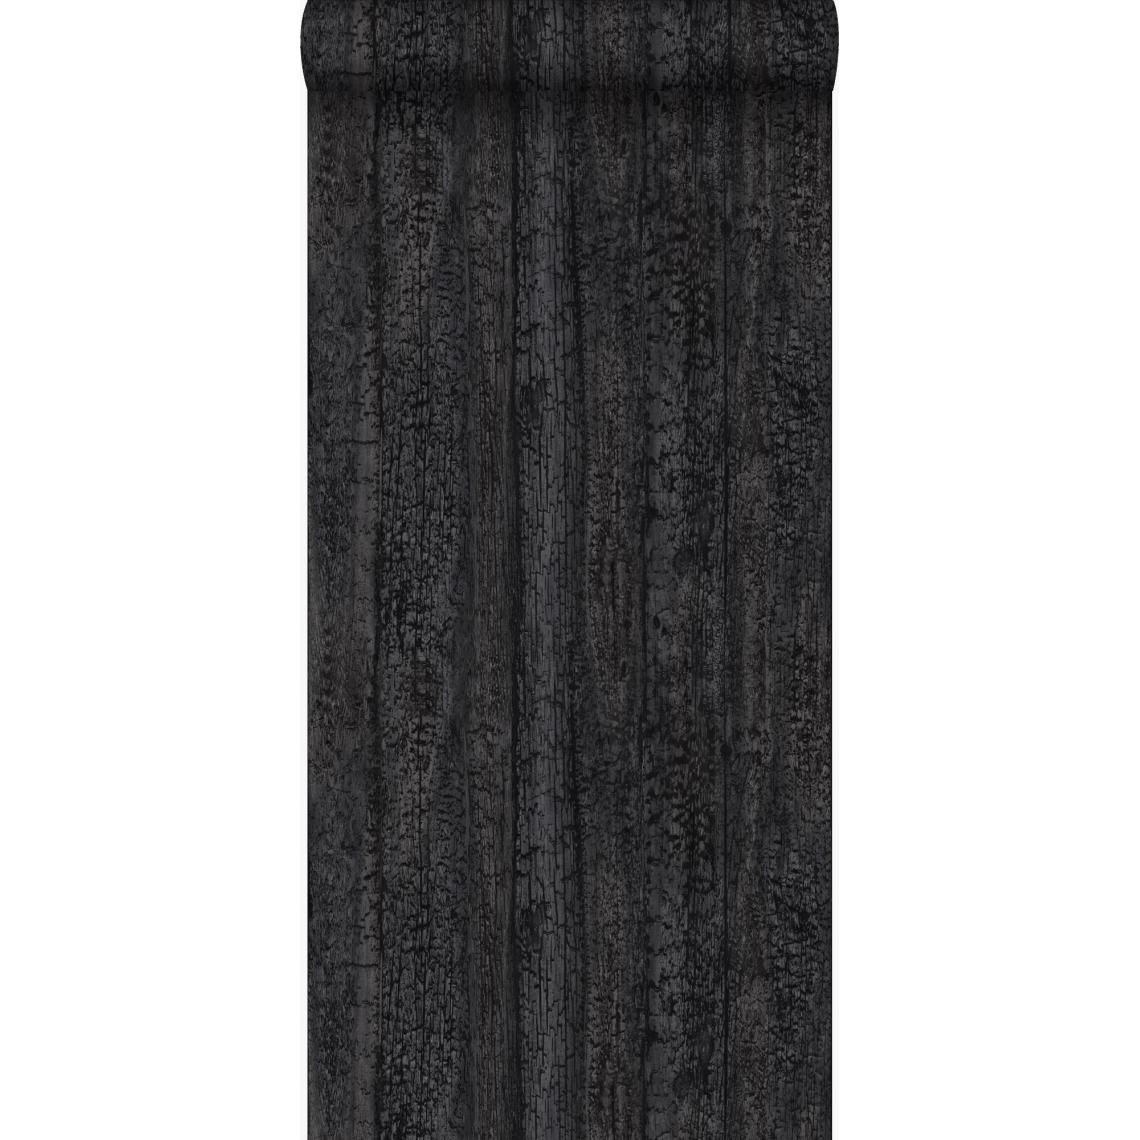 Origin - Origin papier peint imitation bois noir - 347531 - 53 cm x 10.05 m - Papier peint